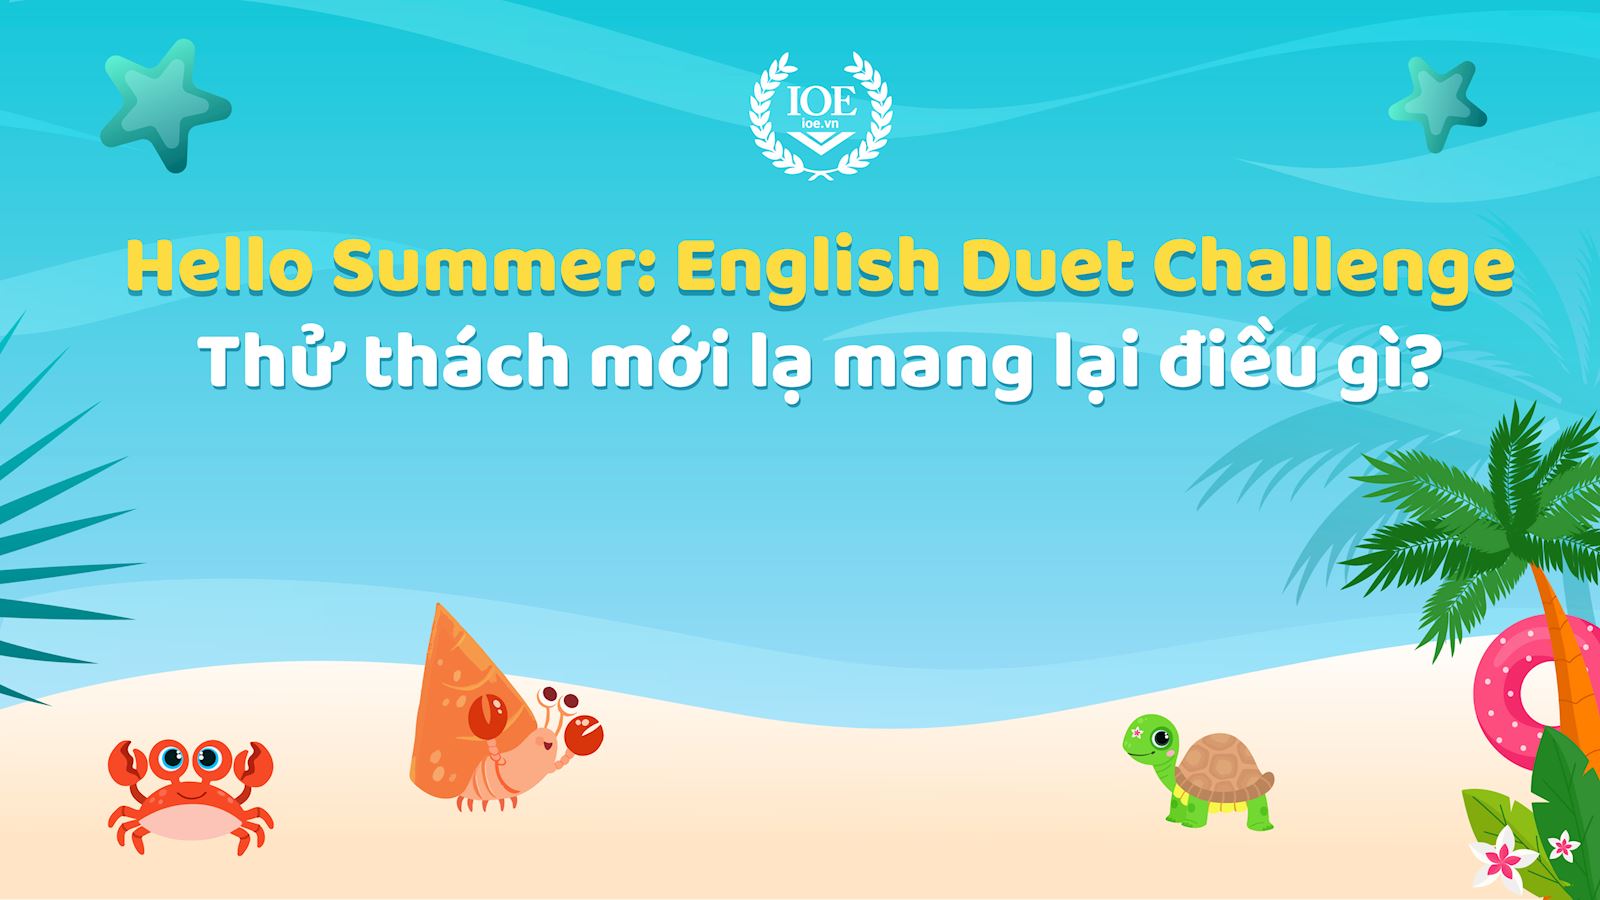 Hello Summer: English Duet Challenge - Thử thách mới lạ mang lại điều gì?